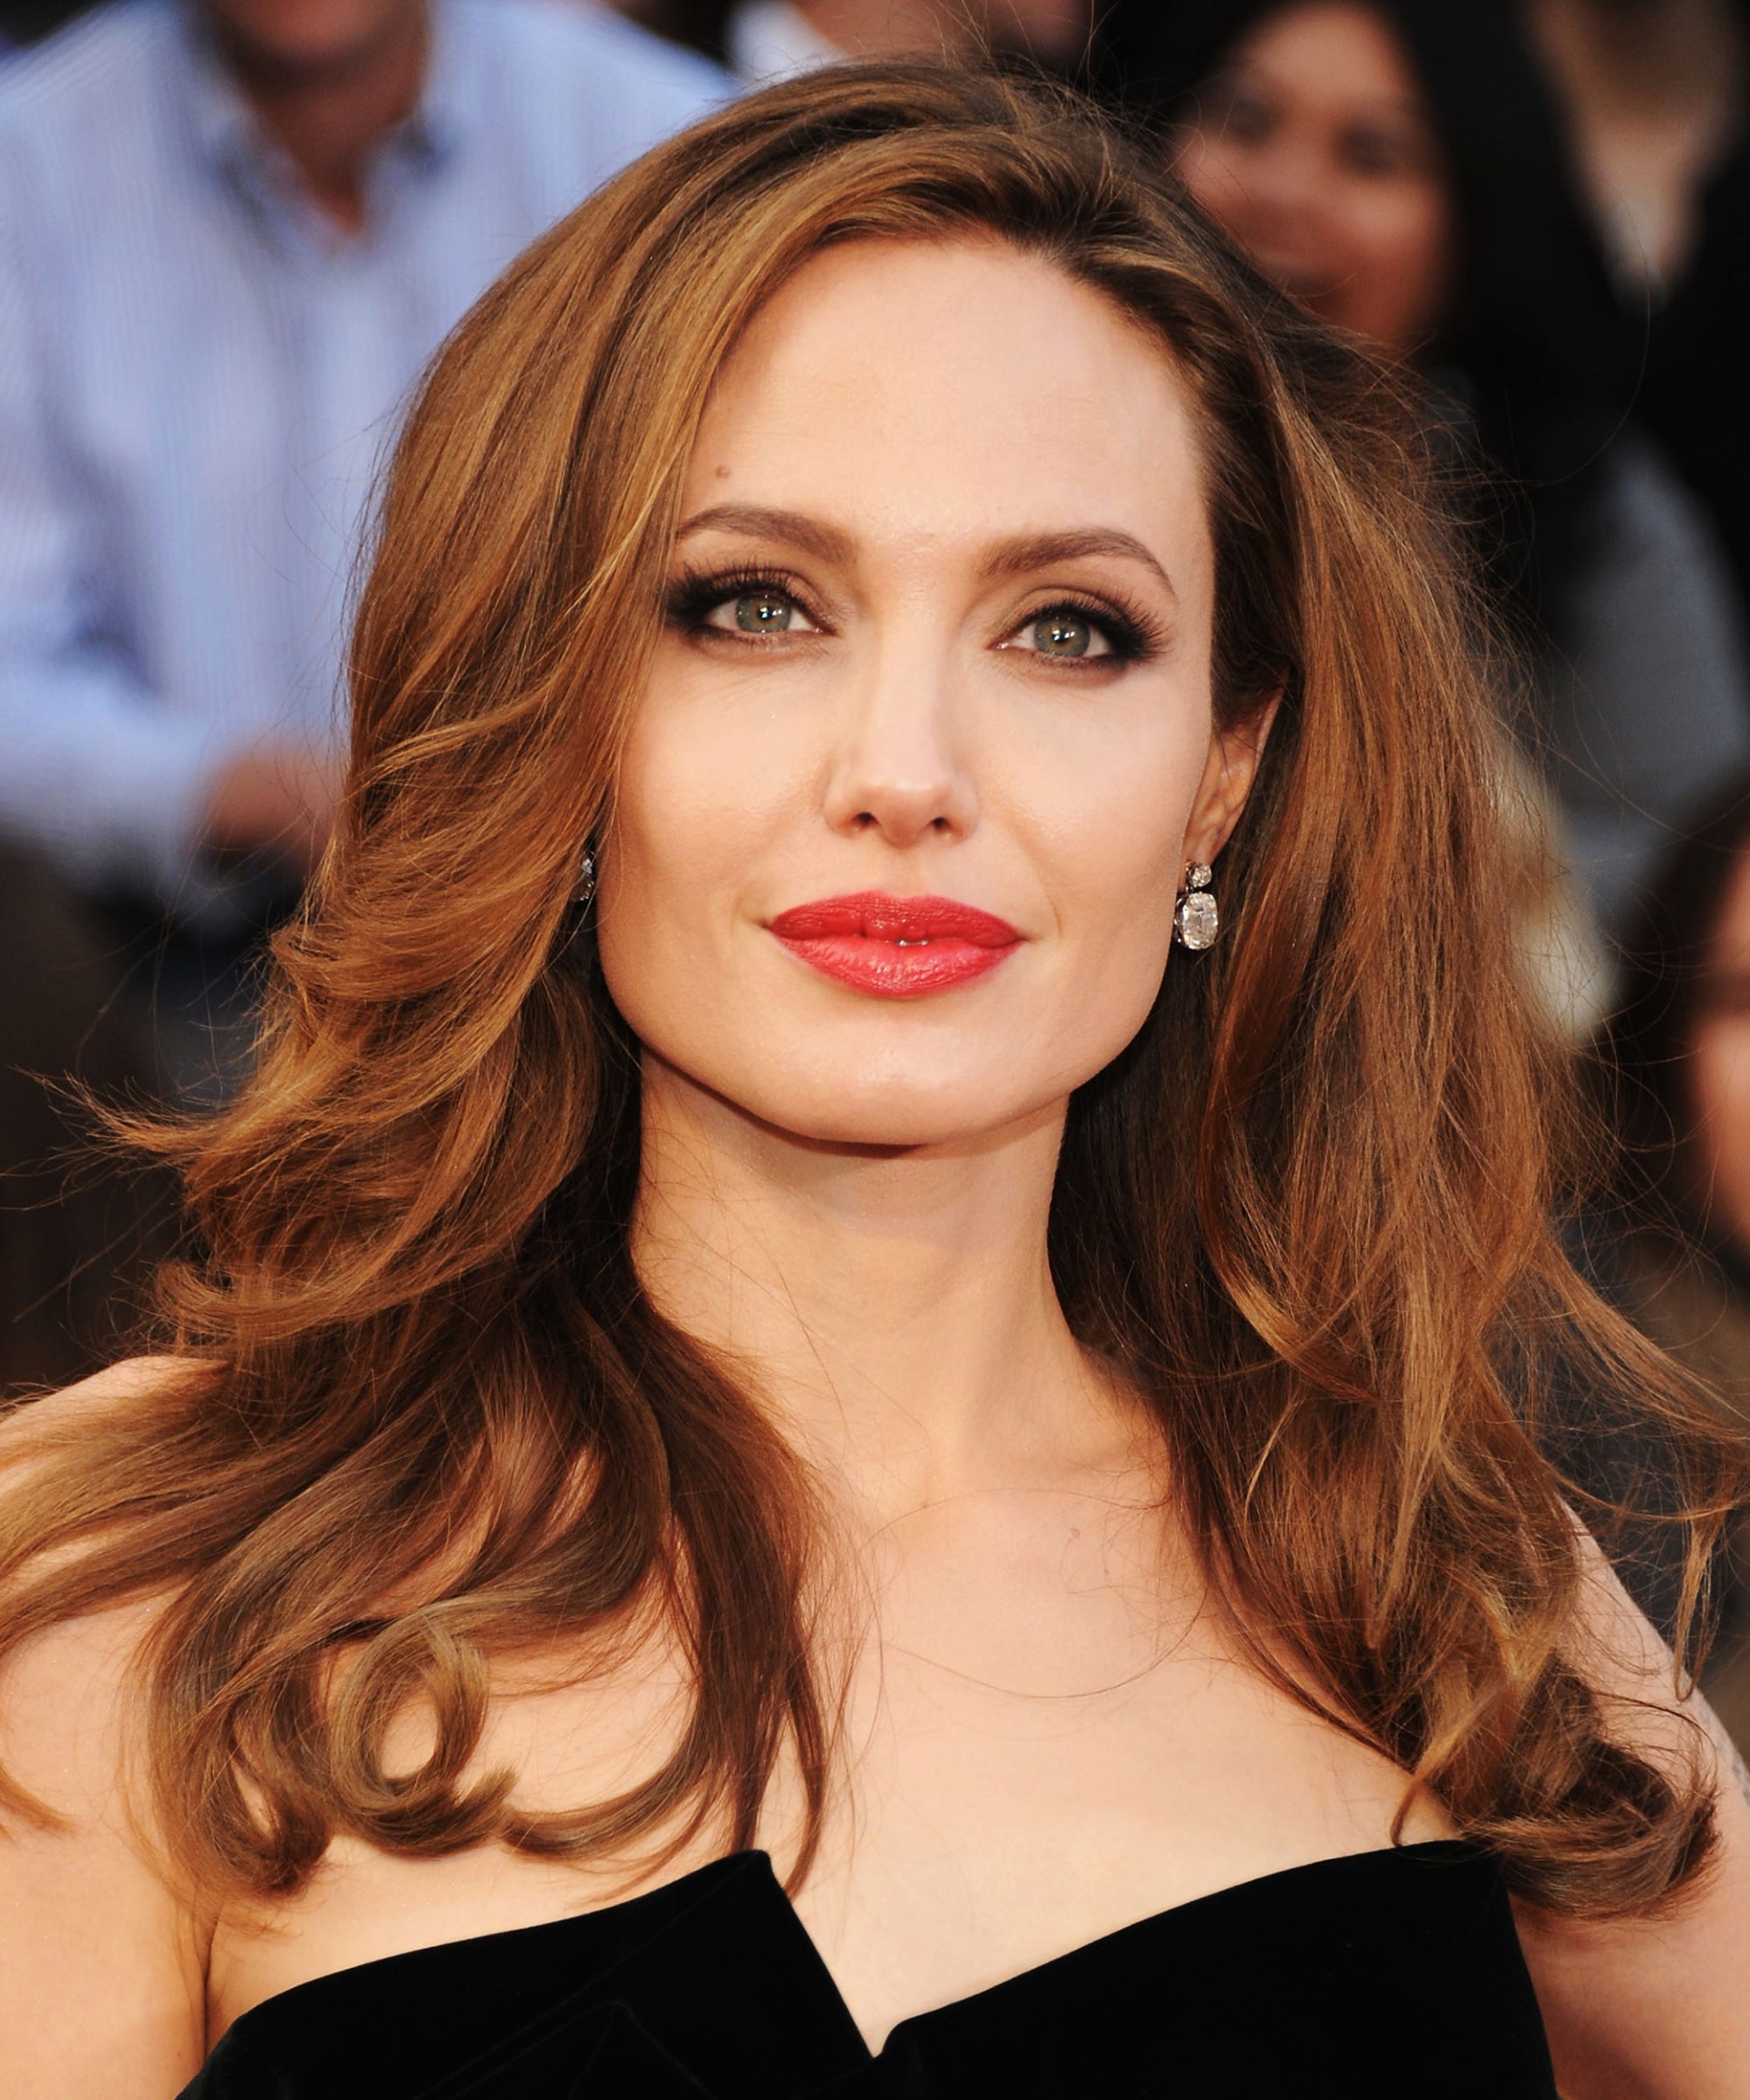 Nhan sắc đẹp không tỳ vết của Angelina Jolie theo thời gian - Ảnh 20